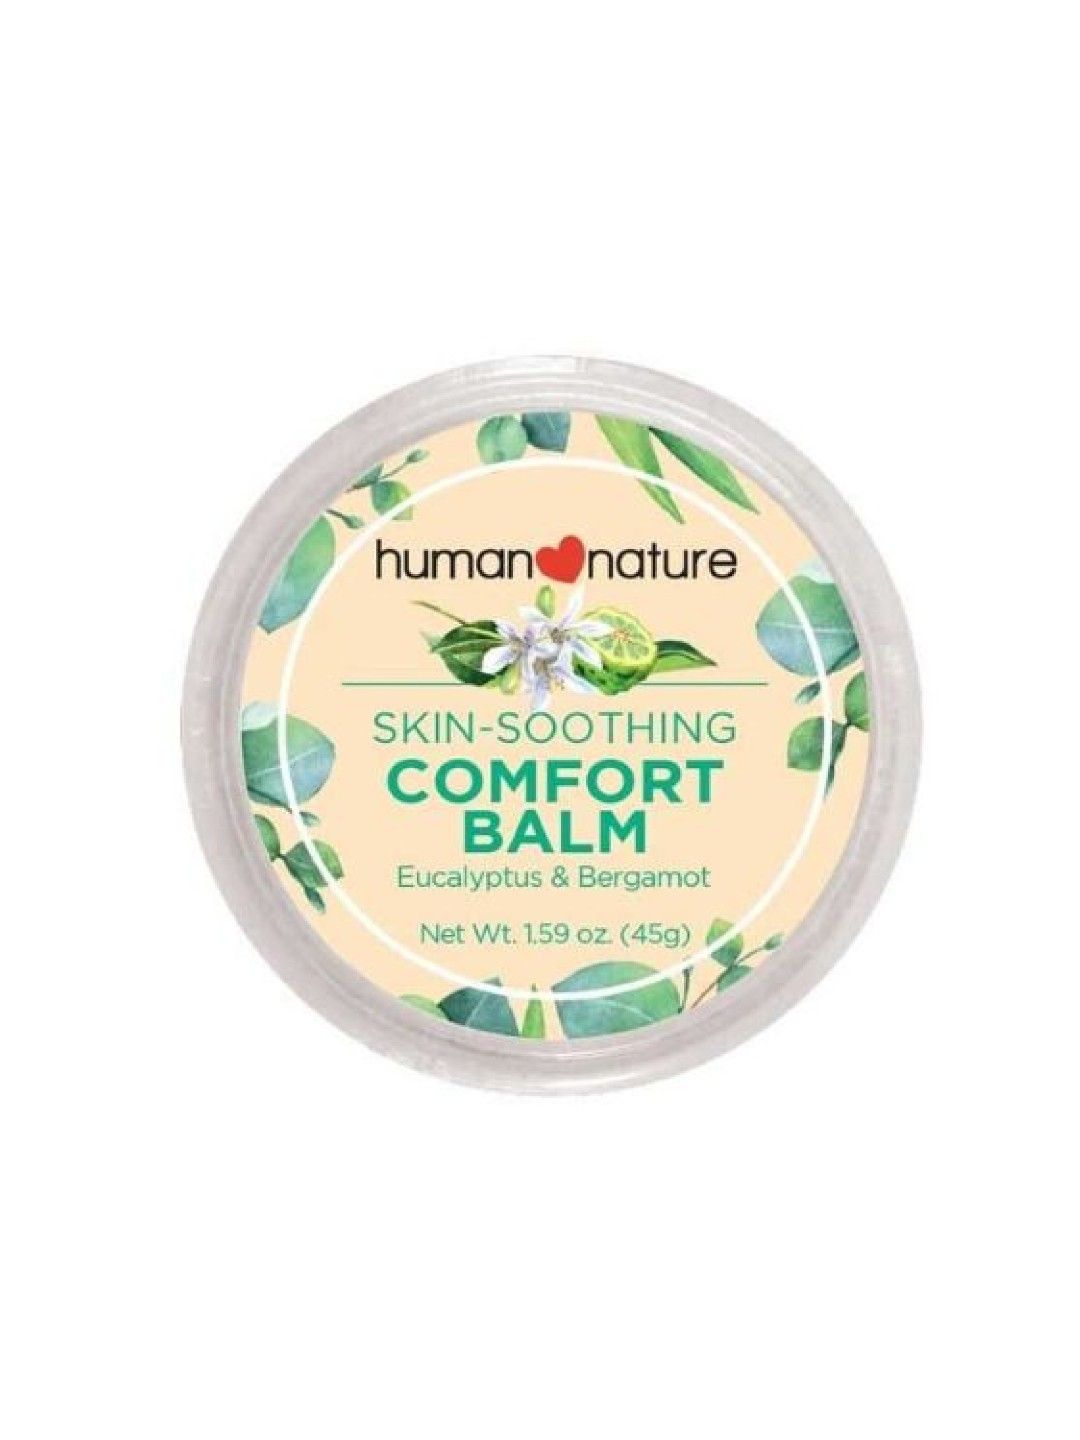 Human Nature Comfort Balm (45g)